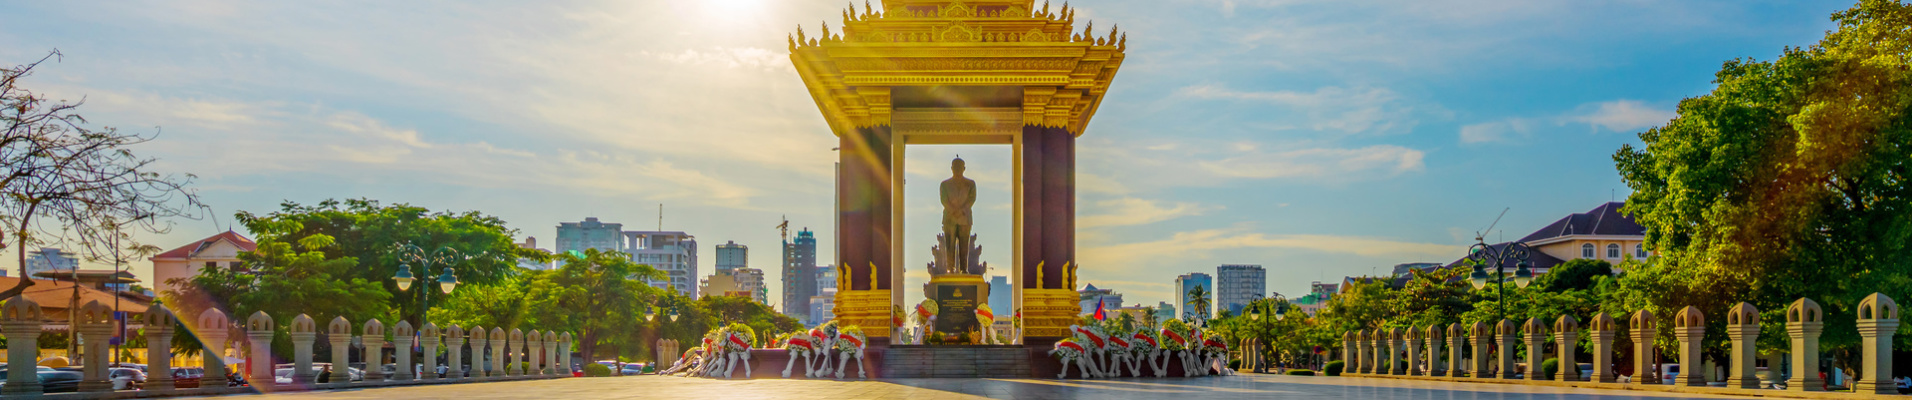 phnom penh pagode